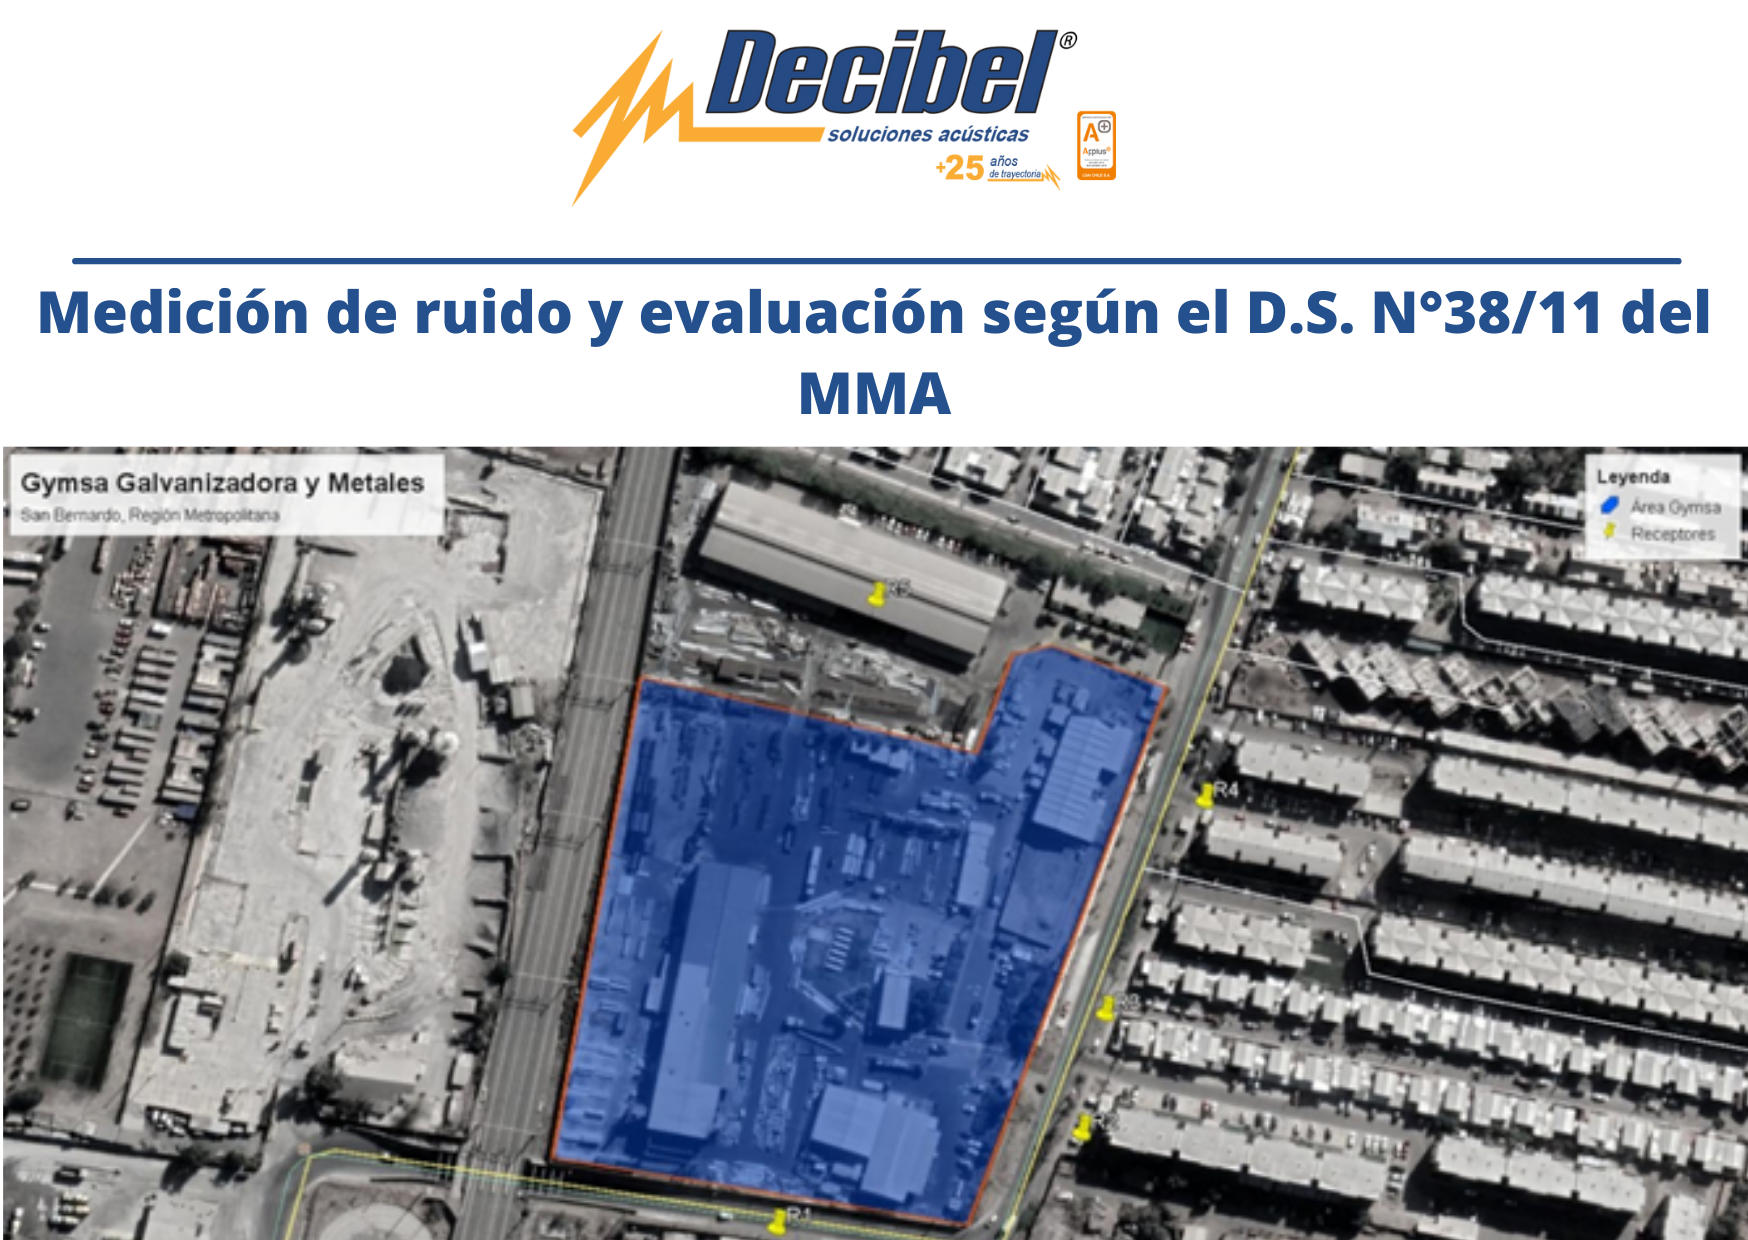 Medición de ruido y evaluación según el Ministerio del Medio Ambiente en Chile